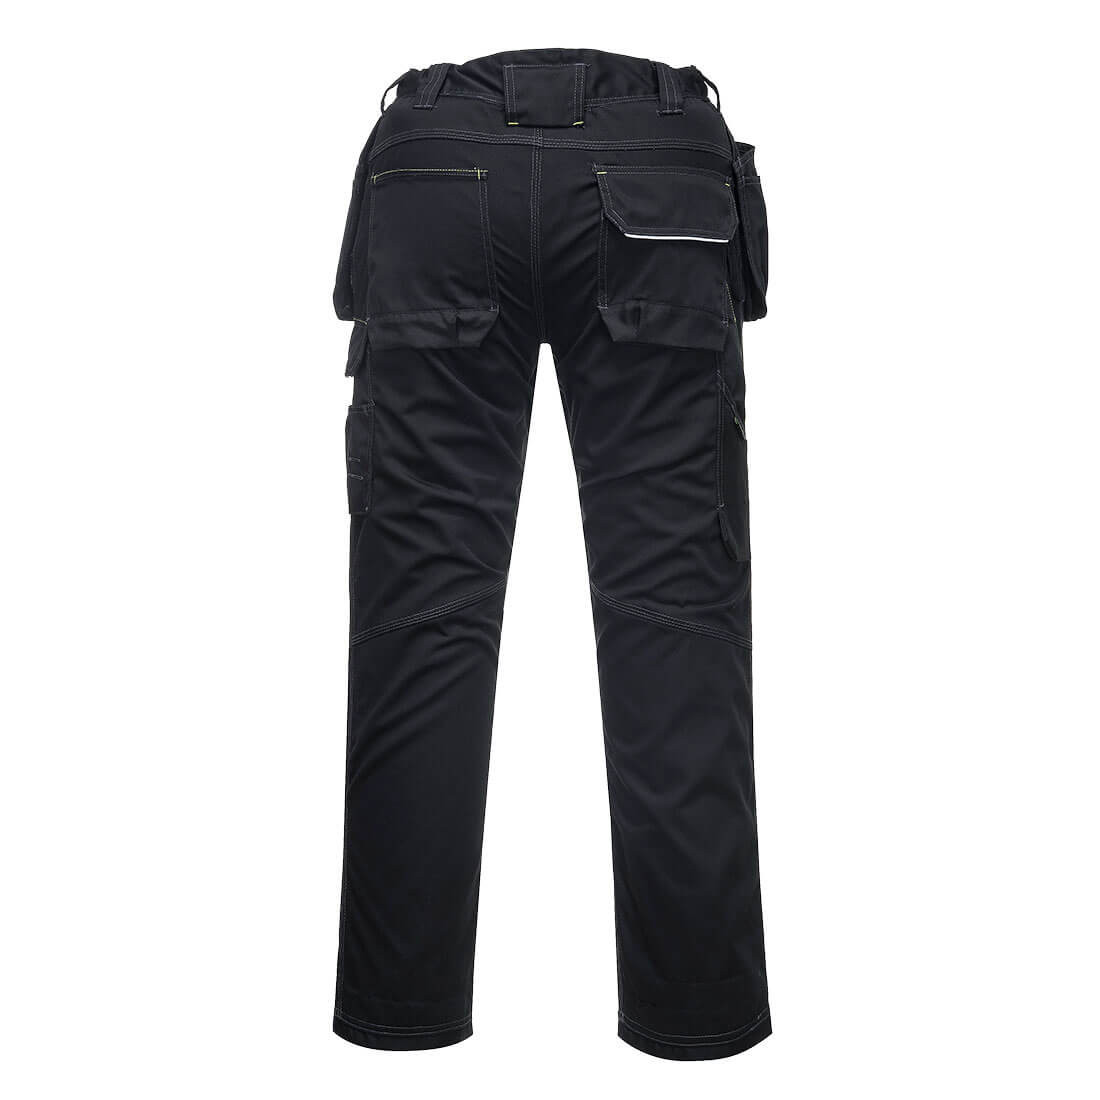 Pantalon Holster d'hiver PW3 doublé - Les vêtements de protection